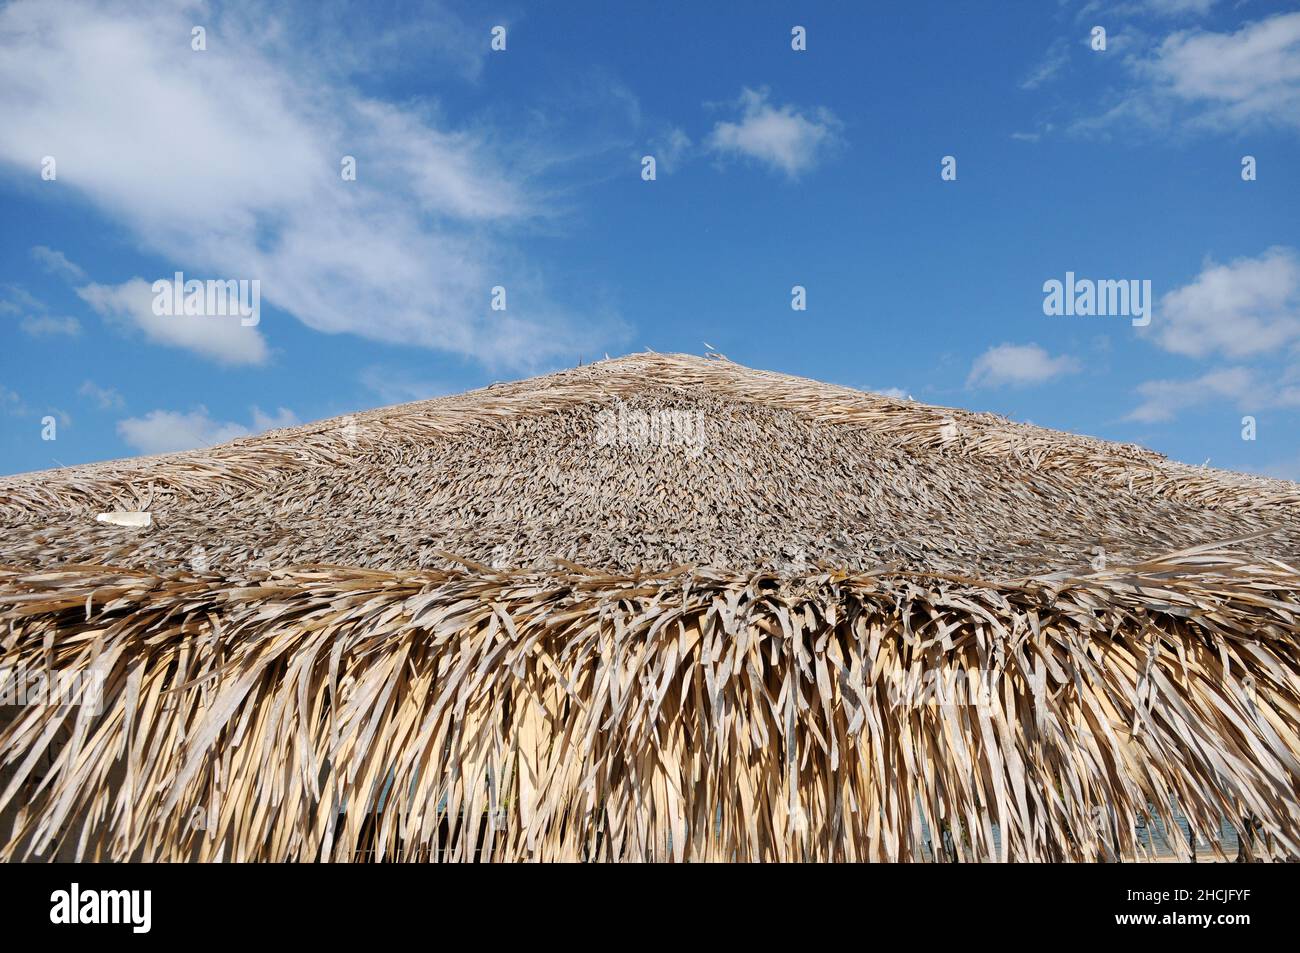 Dettaglio del soffitto di paglia dell'albero di acai dei chioschi dell'isola dell'amore in Alter do Chão, nello stato di Pará, Brasile settentrionale. Foto Stock